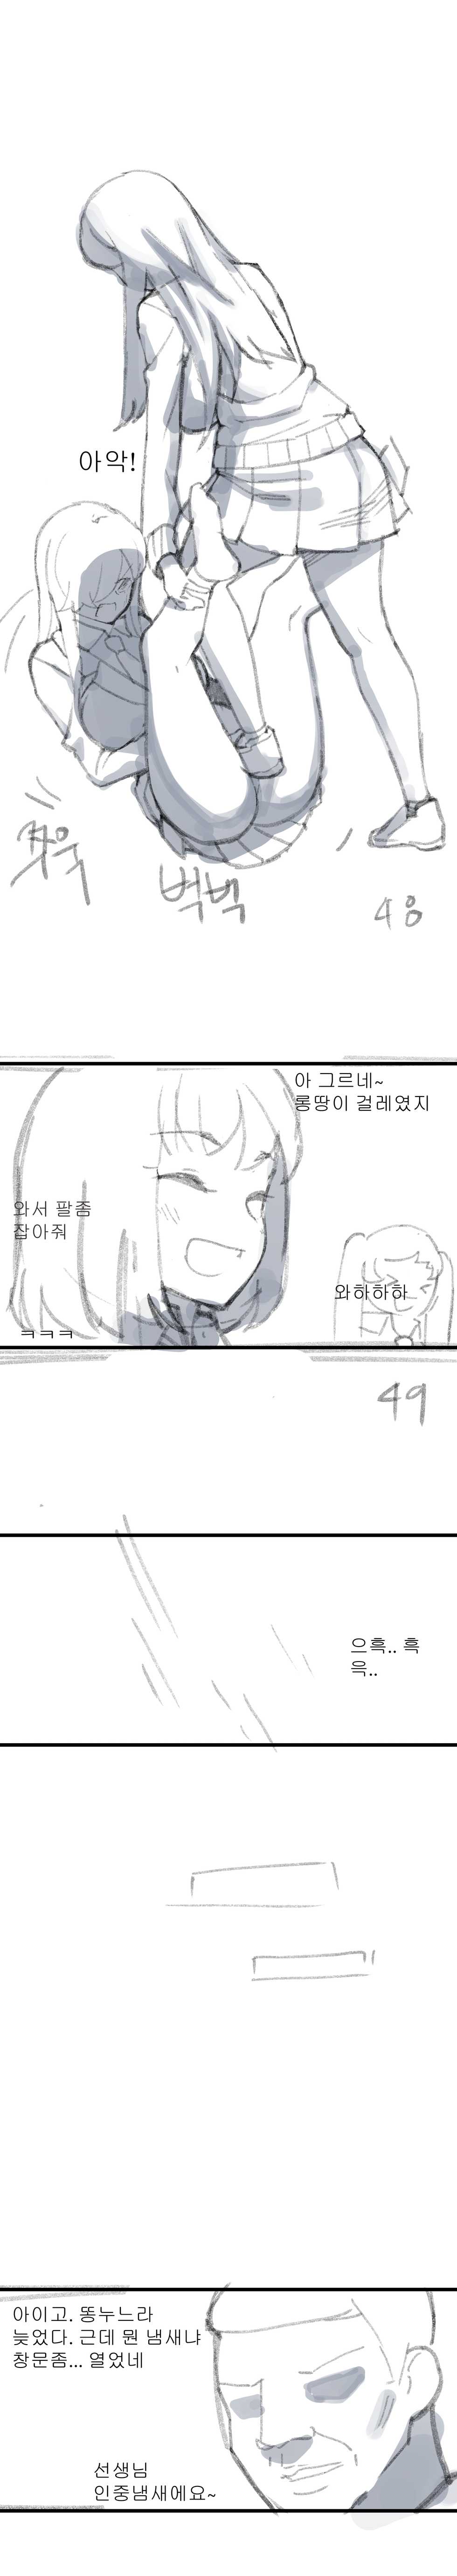 [8] ㄴㅅㅁ [Korean] - Page 15